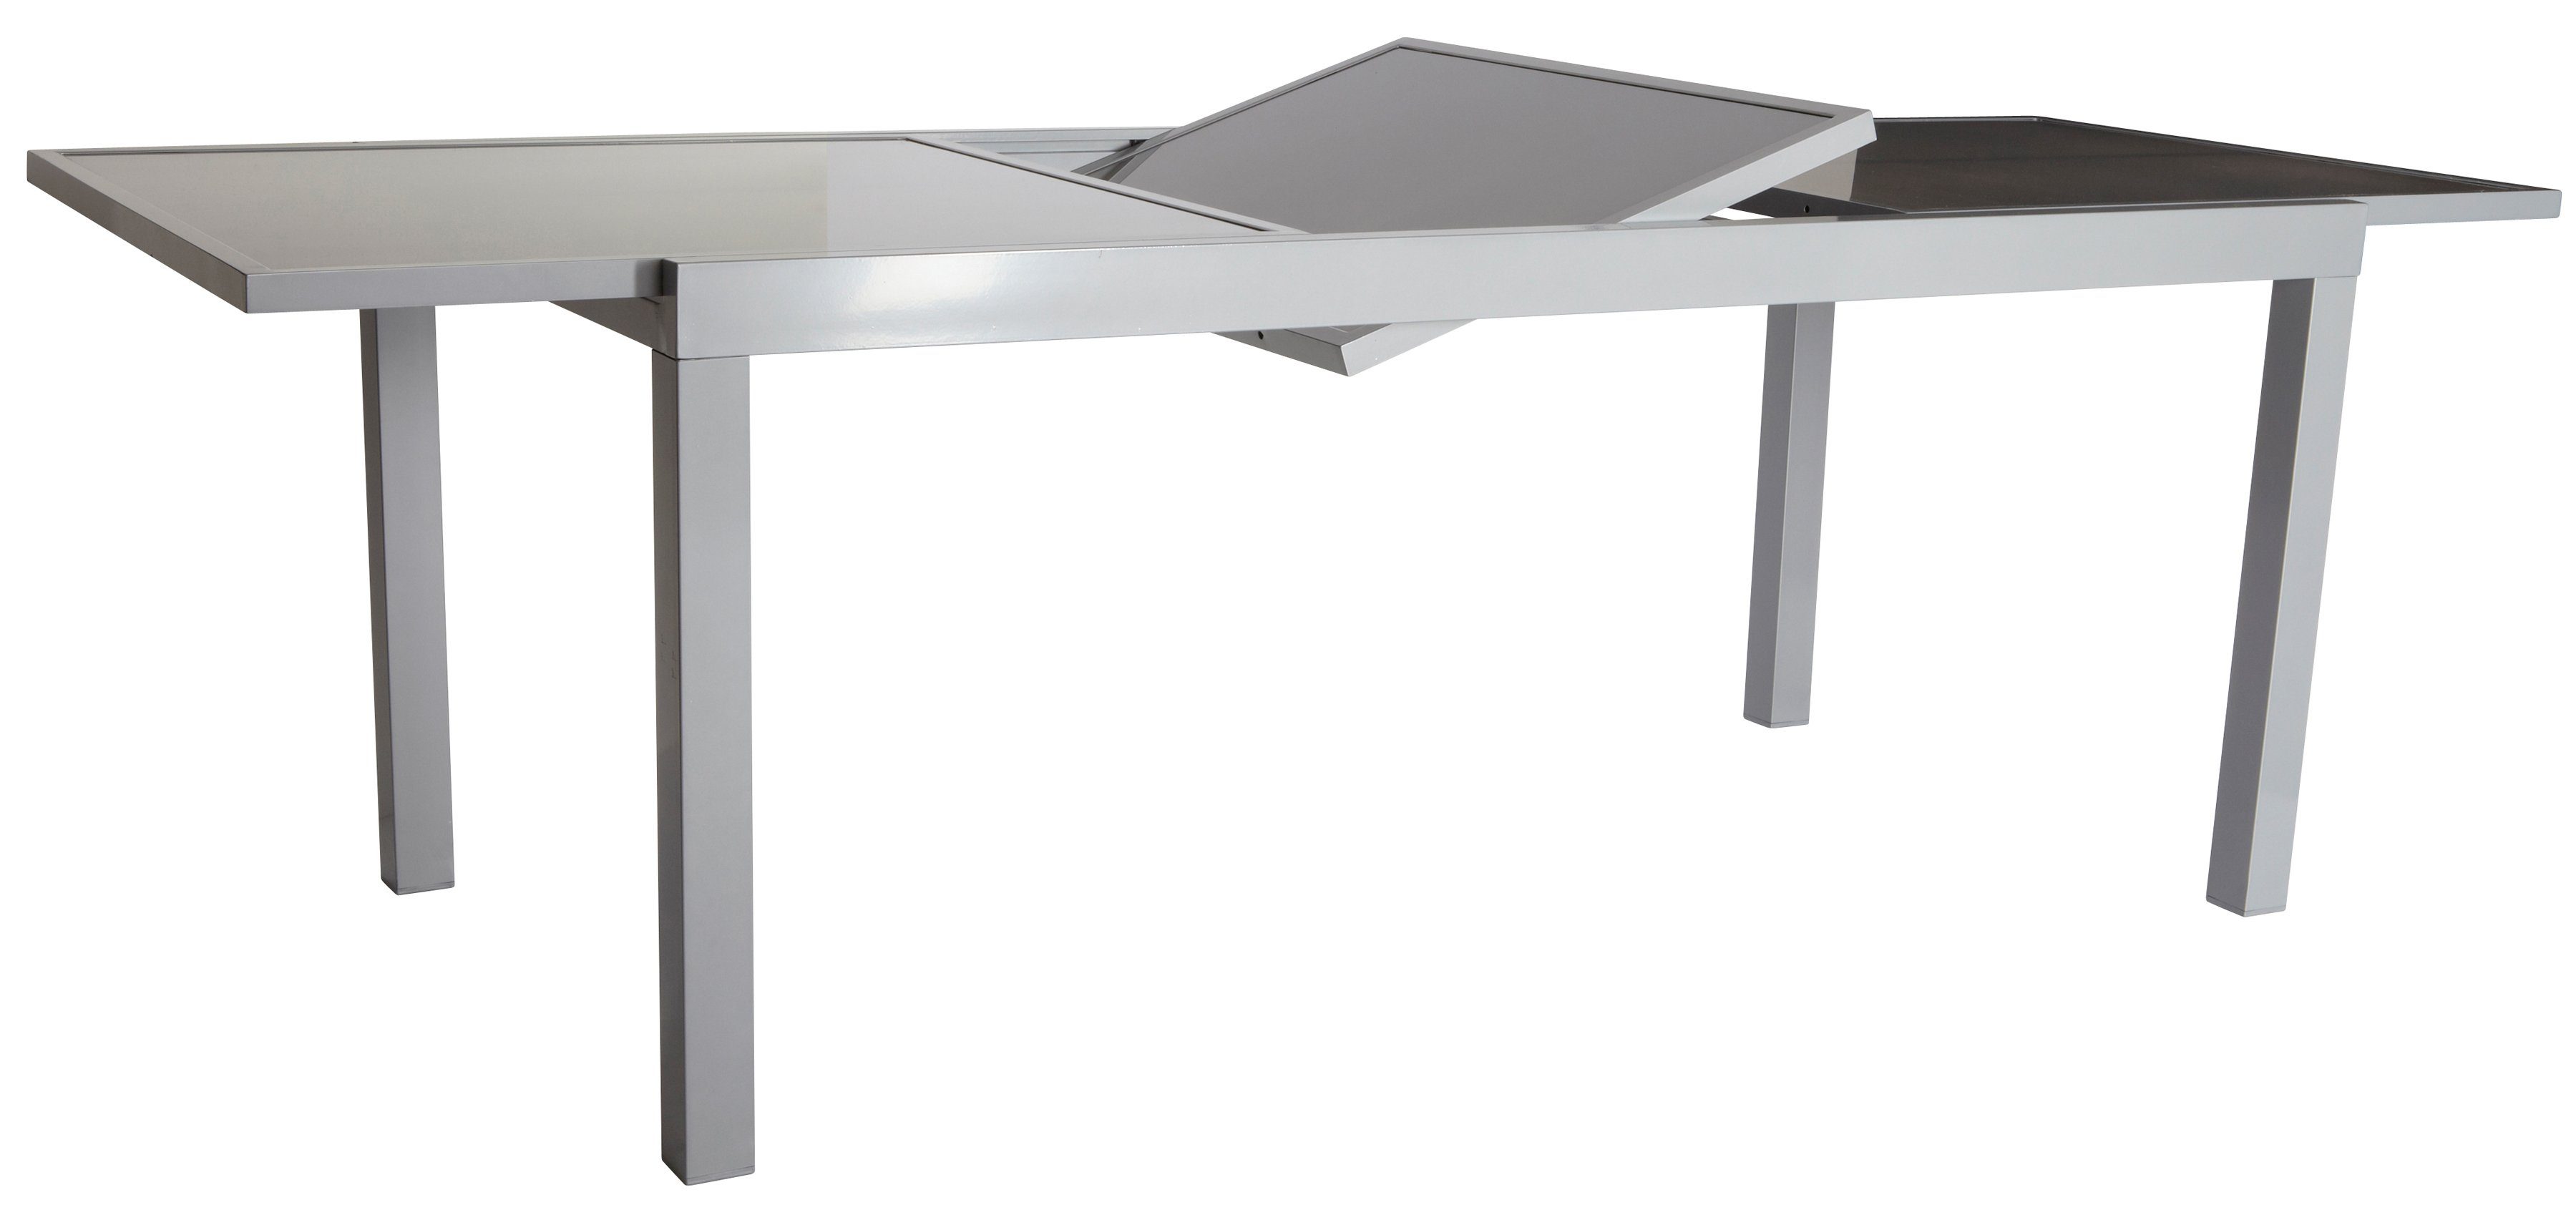 MERXX Gartentisch »Amalfi«, 90x140-200cm, ausziehbar-kaufen